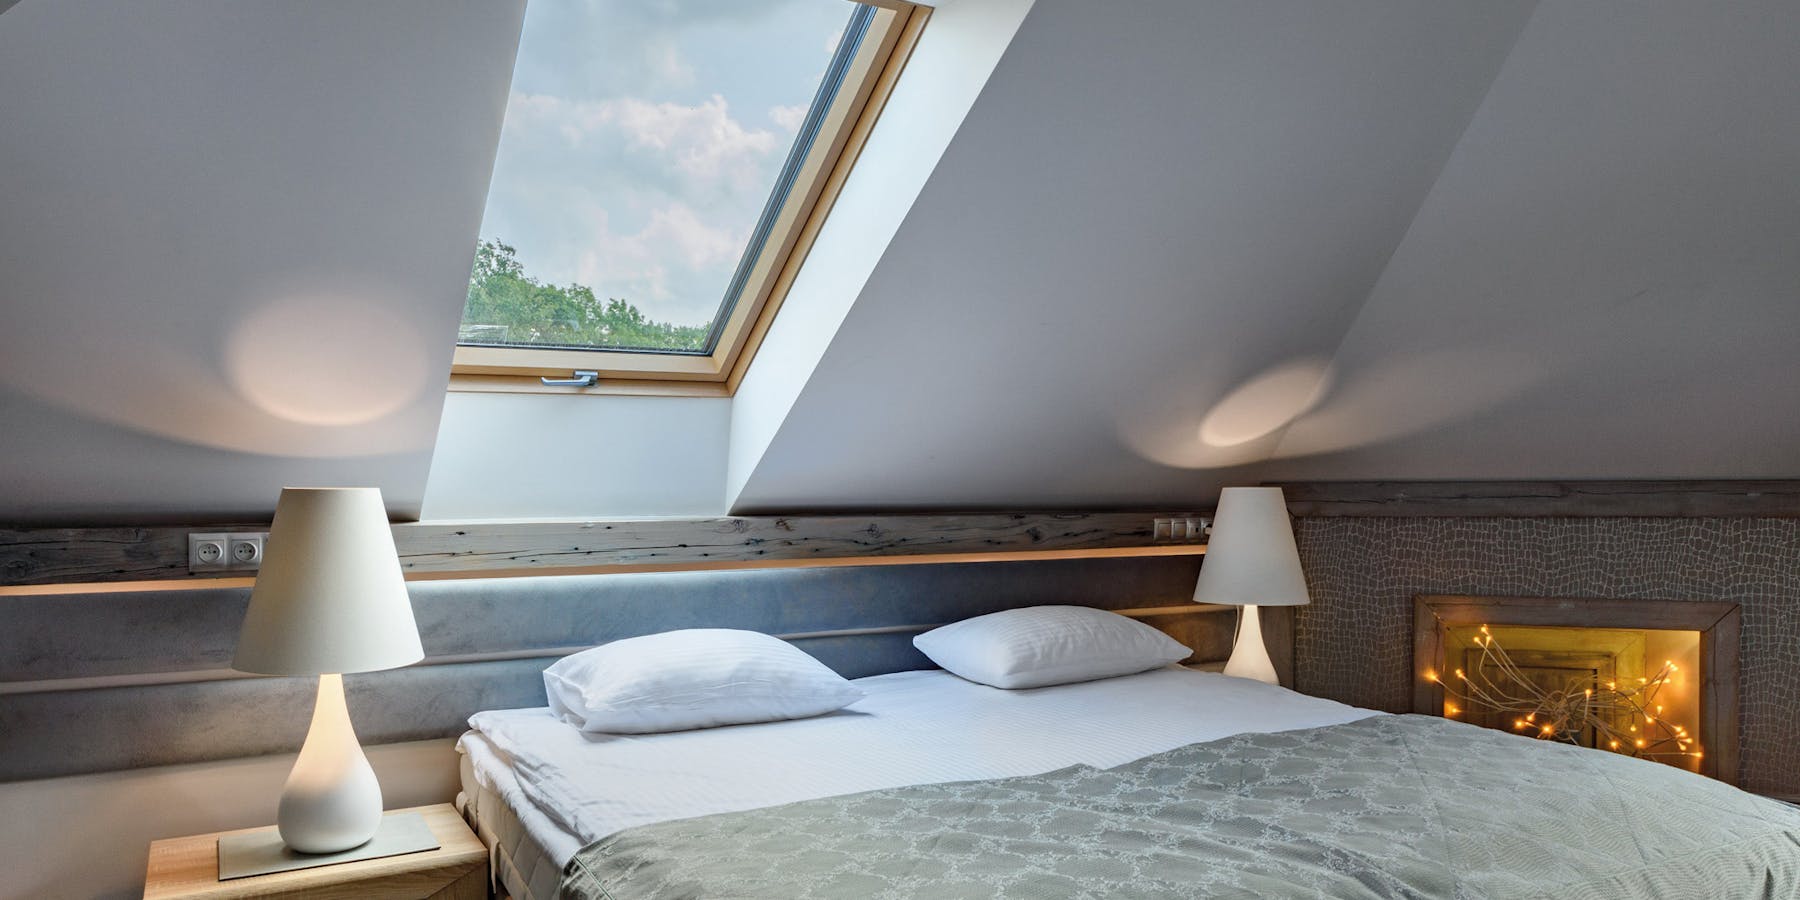 Bett unter Dachschräge - Wohnideen